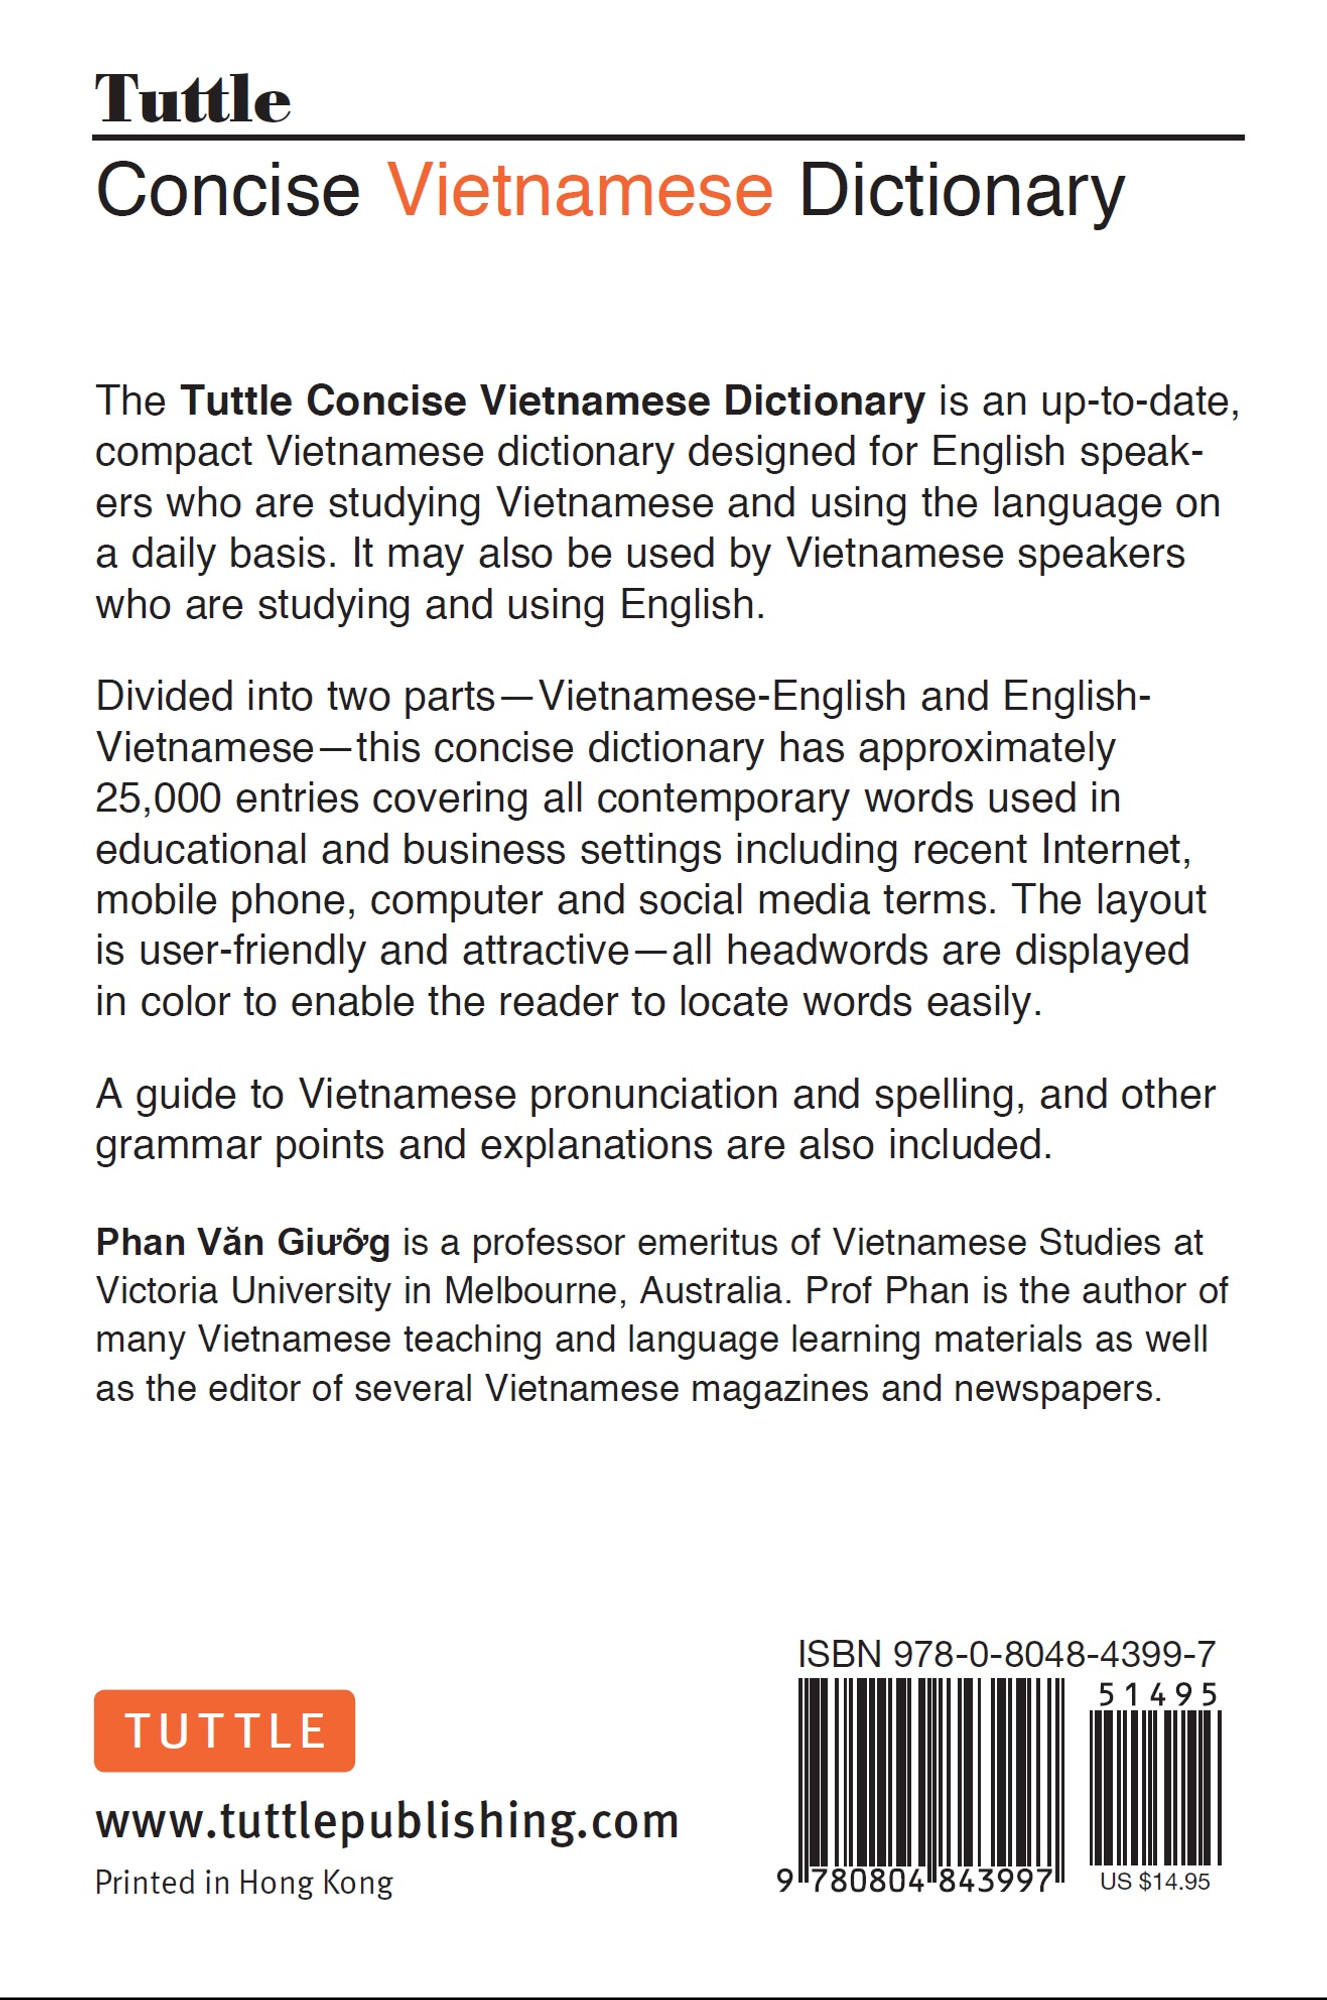 Tuttle Concise Vietnamese Dictionary9780804843997 Tuttle Publishing